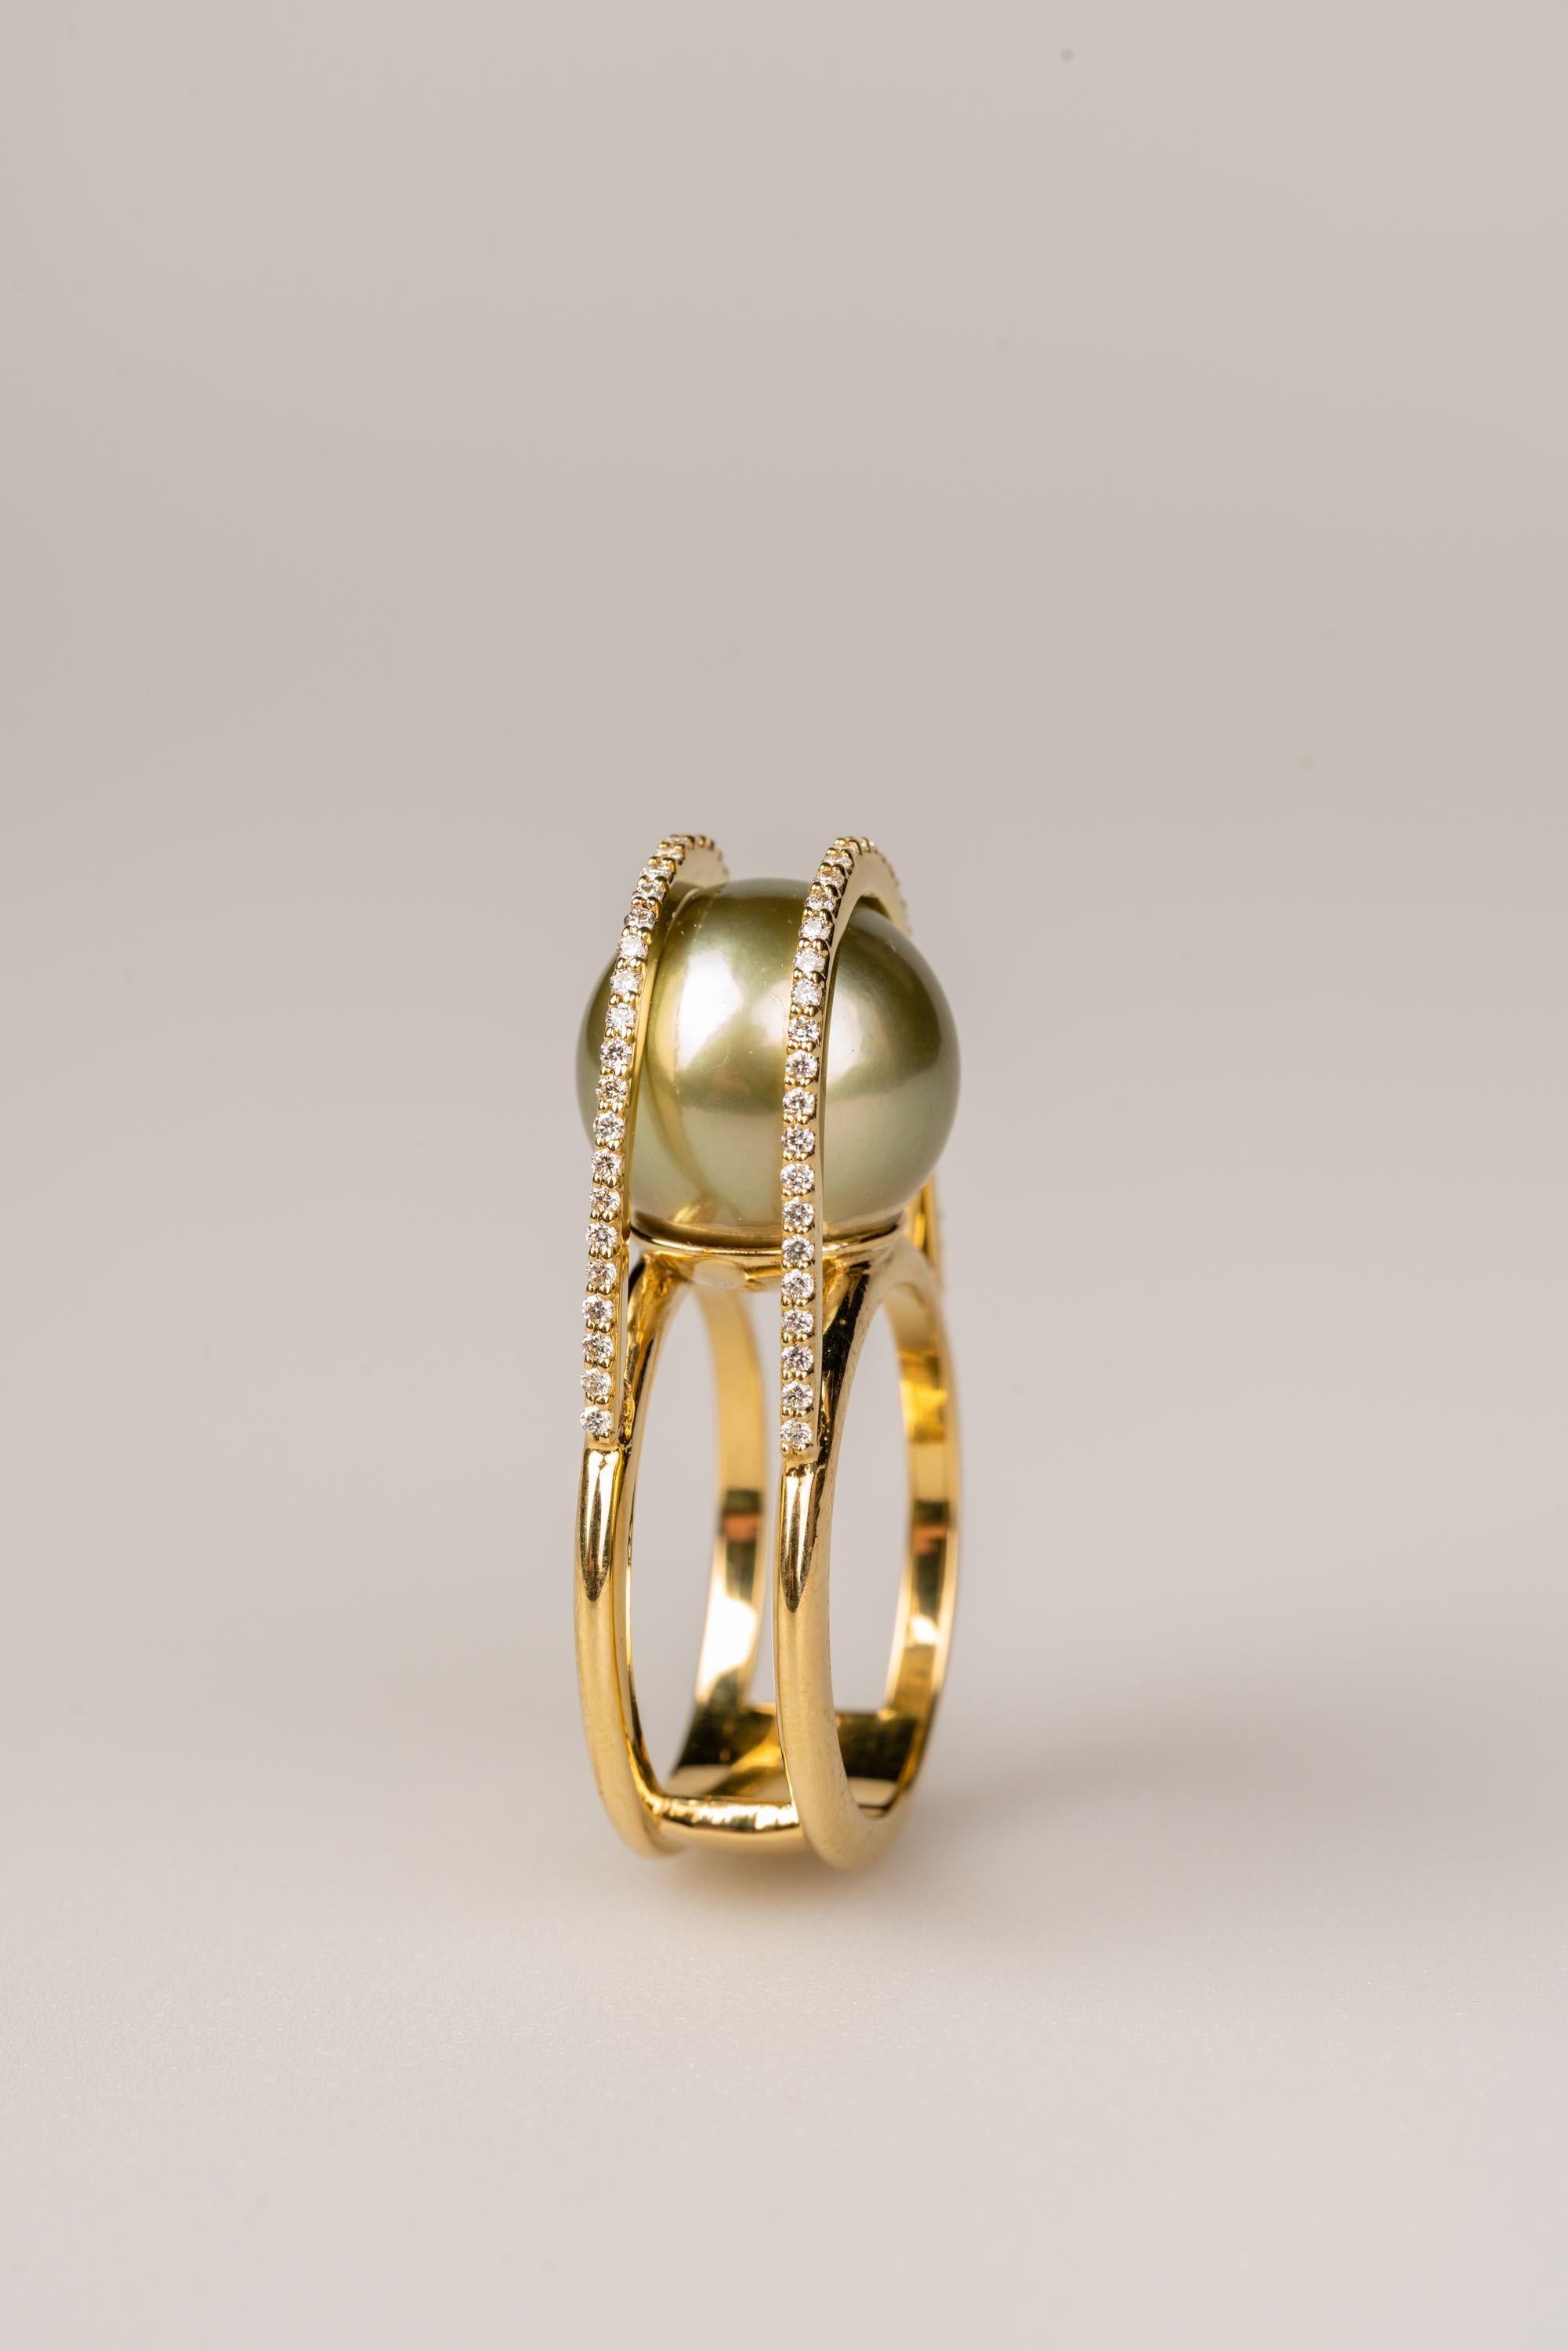 Une bague en or jaune 18k sertie d'une perle de Tahiti verte de 12,5 mm, et de deux bracelets de soixante-quatorze diamants bruns clairs de 1,0 mm, d'un poids total de 0,37 carat. Bague taille 6.5. Cette bague a été fabriquée et conçue par llyn